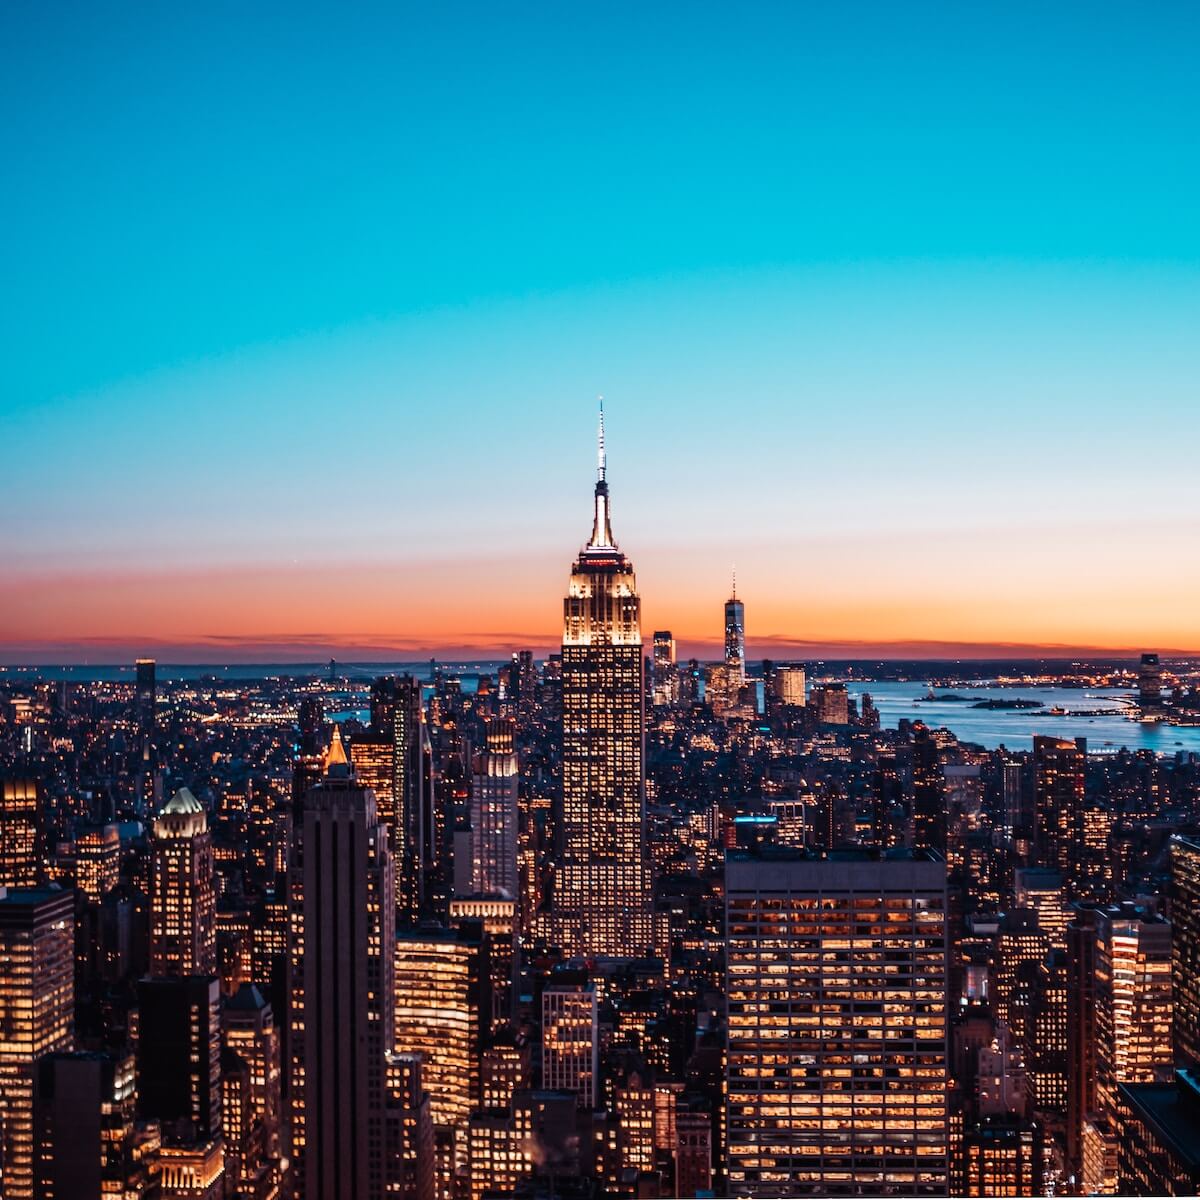 vue aérienne des bâtiments de la ville de New York pendant la nuit